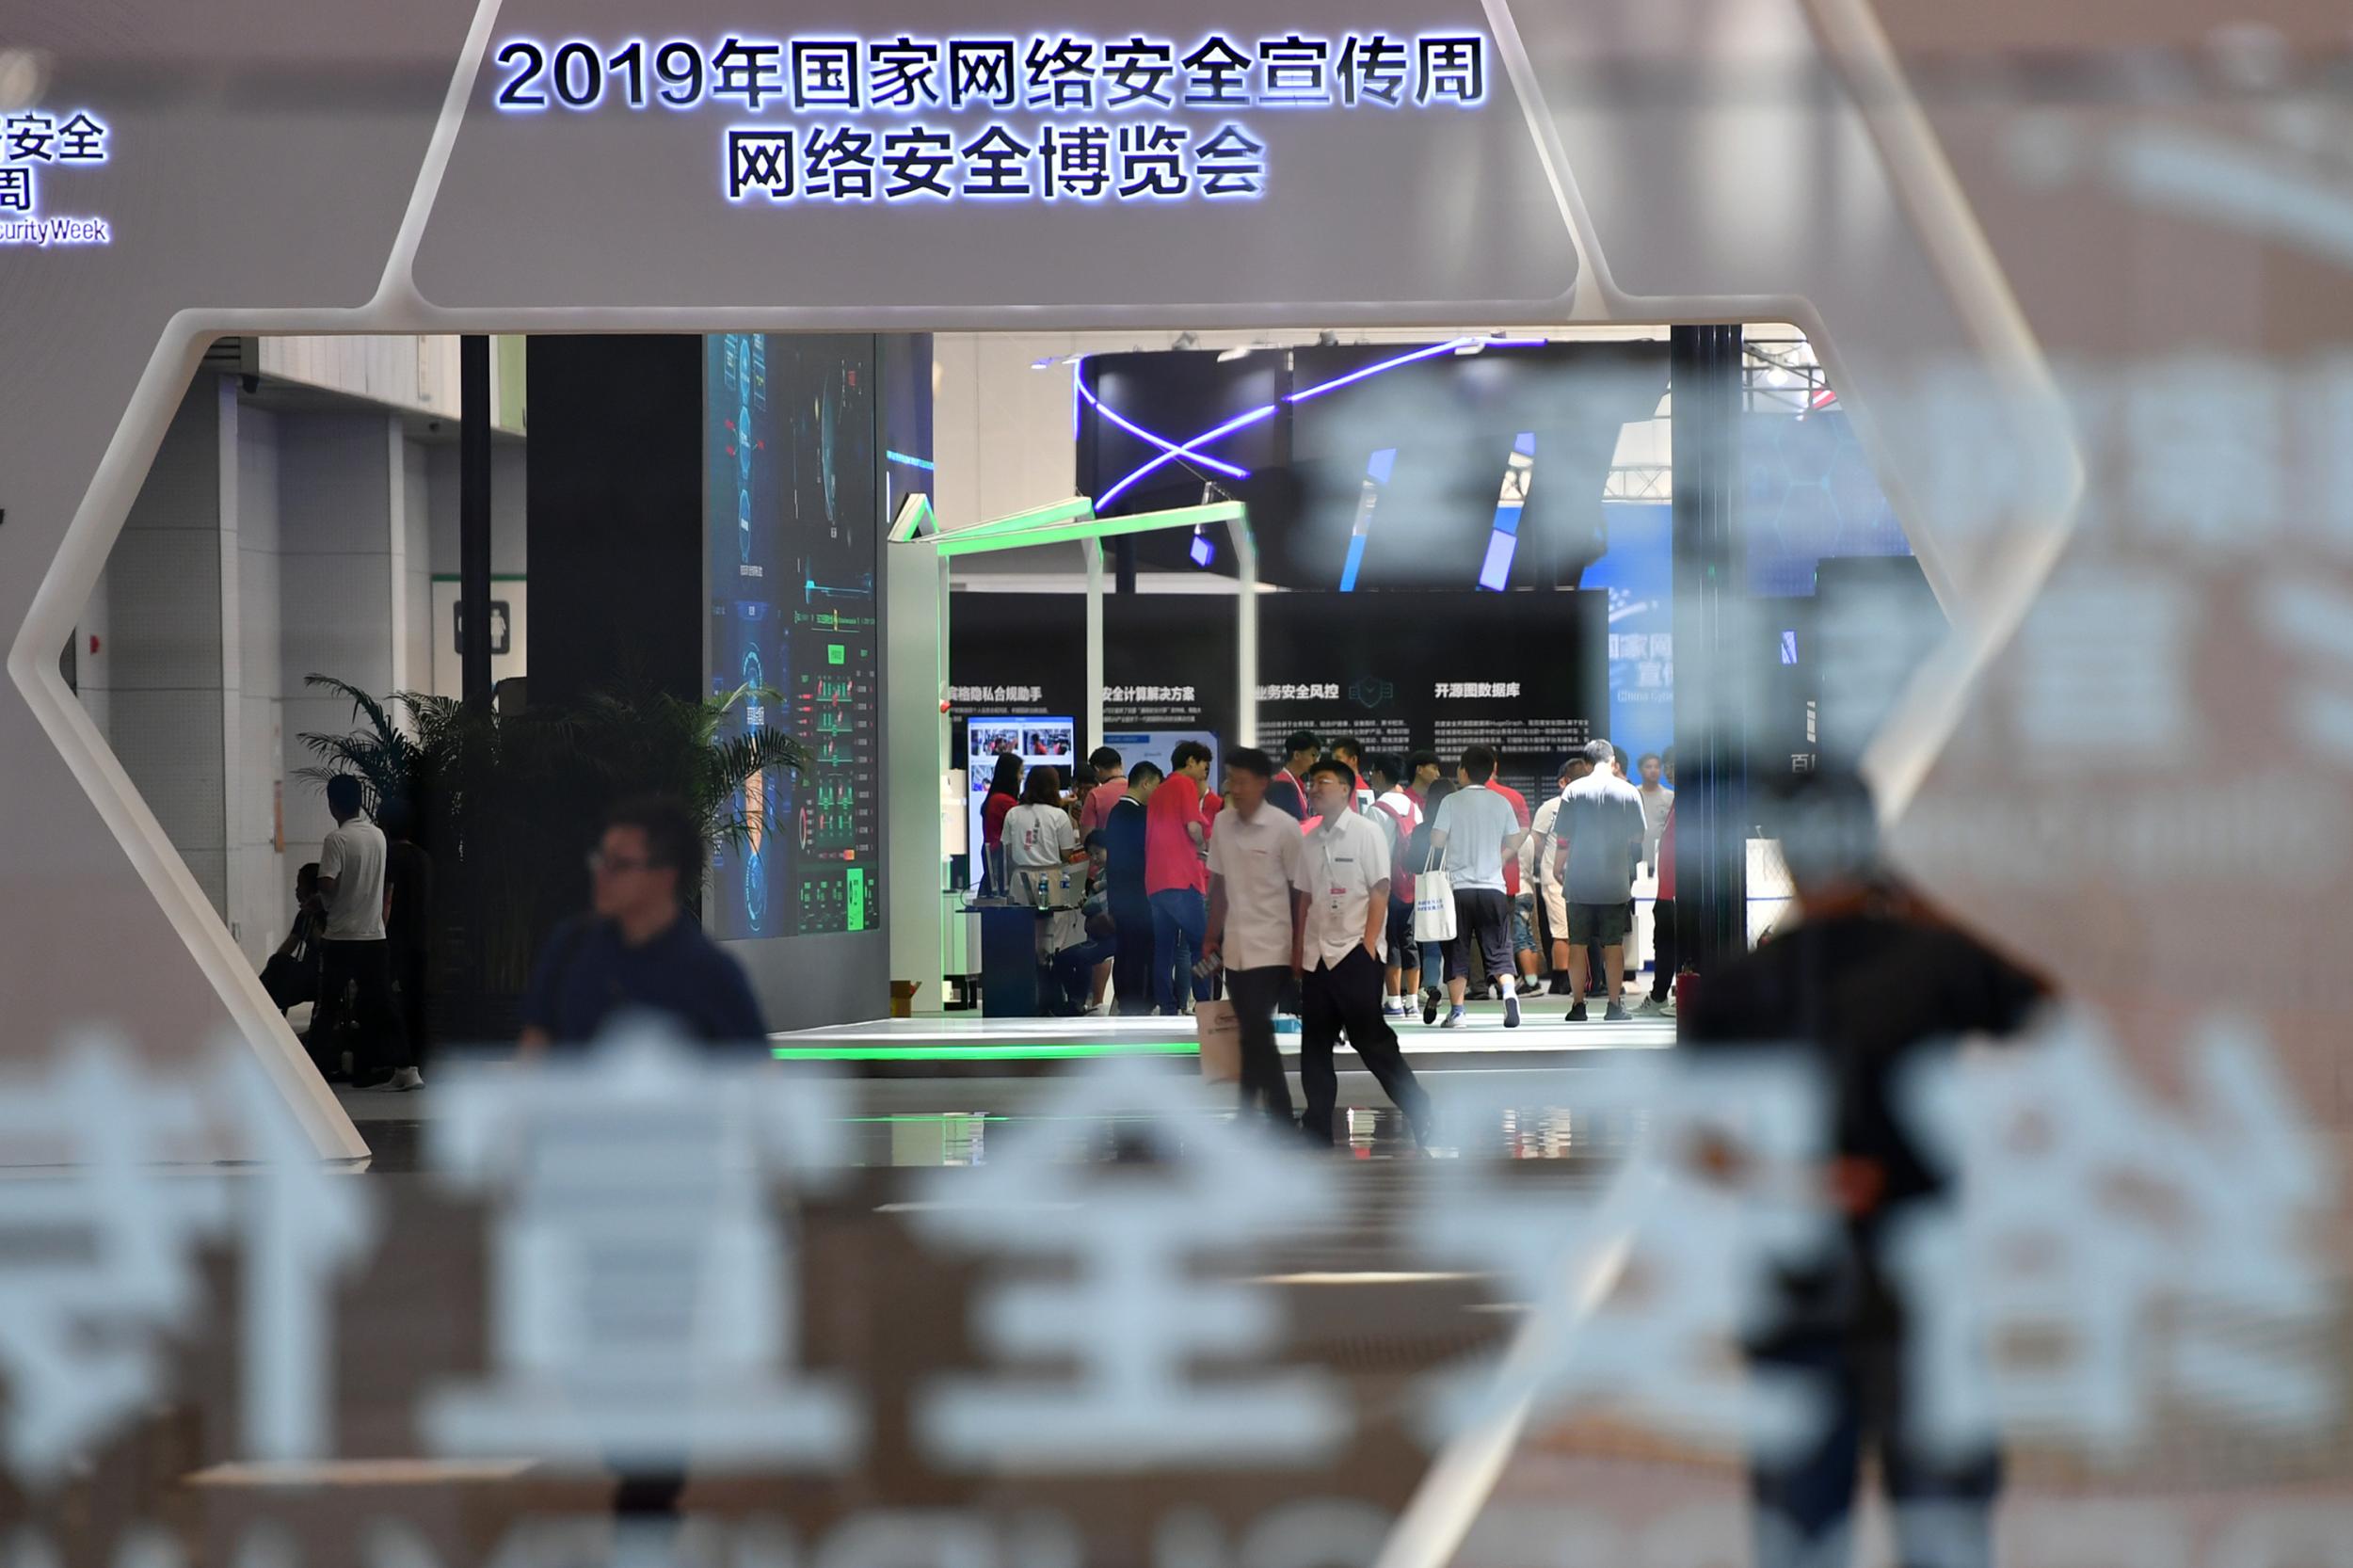 2019年网络安全博览会在天津举行